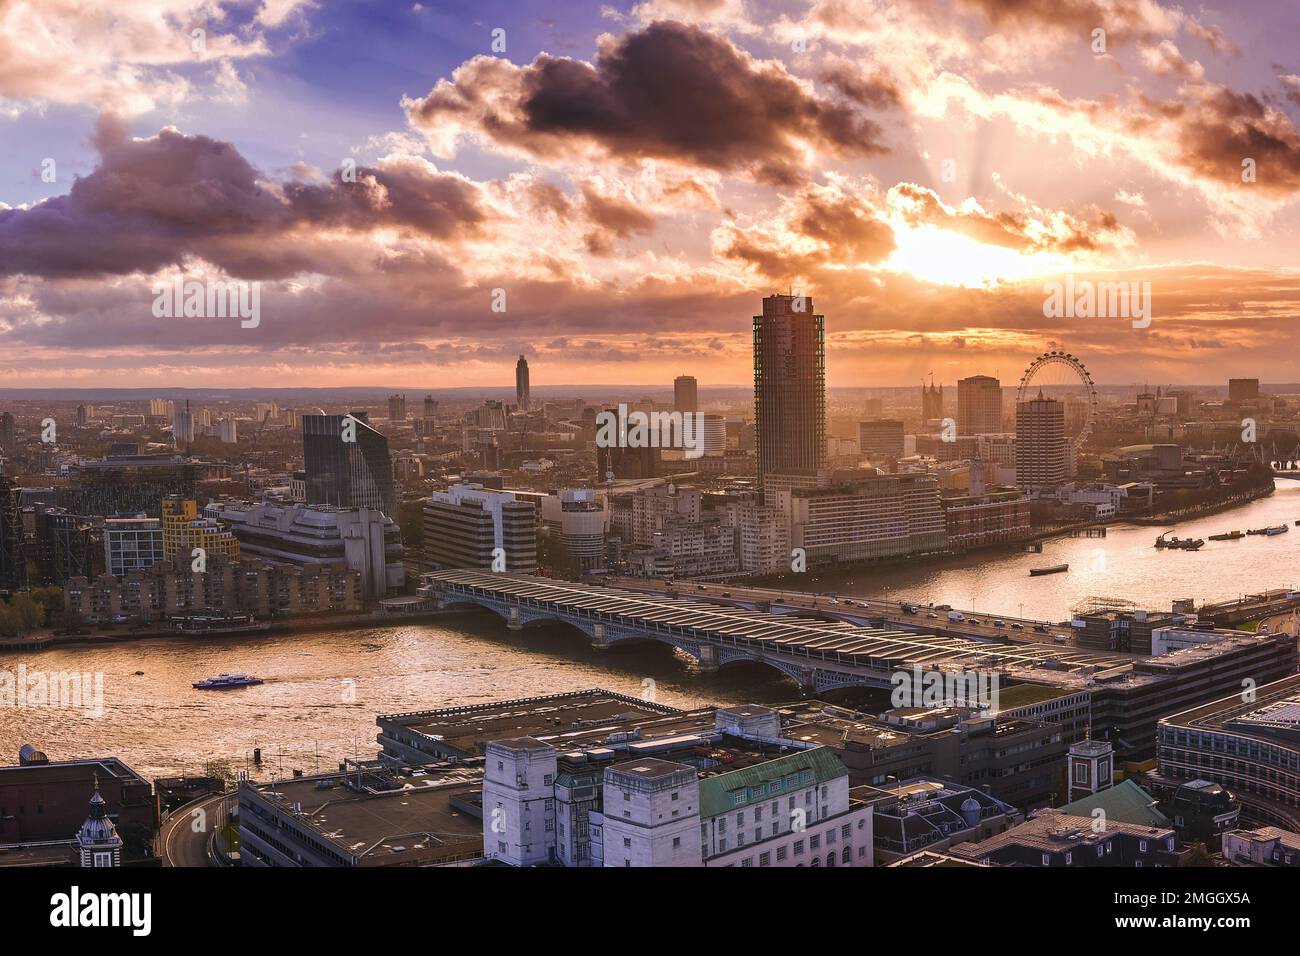 Londra, Regno Unito - Vista panoramica dello skyline di Londra sud-occidentale al tramonto con il Tamigi, il Ponte di Blackfriars, il London Eye, i grattacieli e la dram Foto Stock